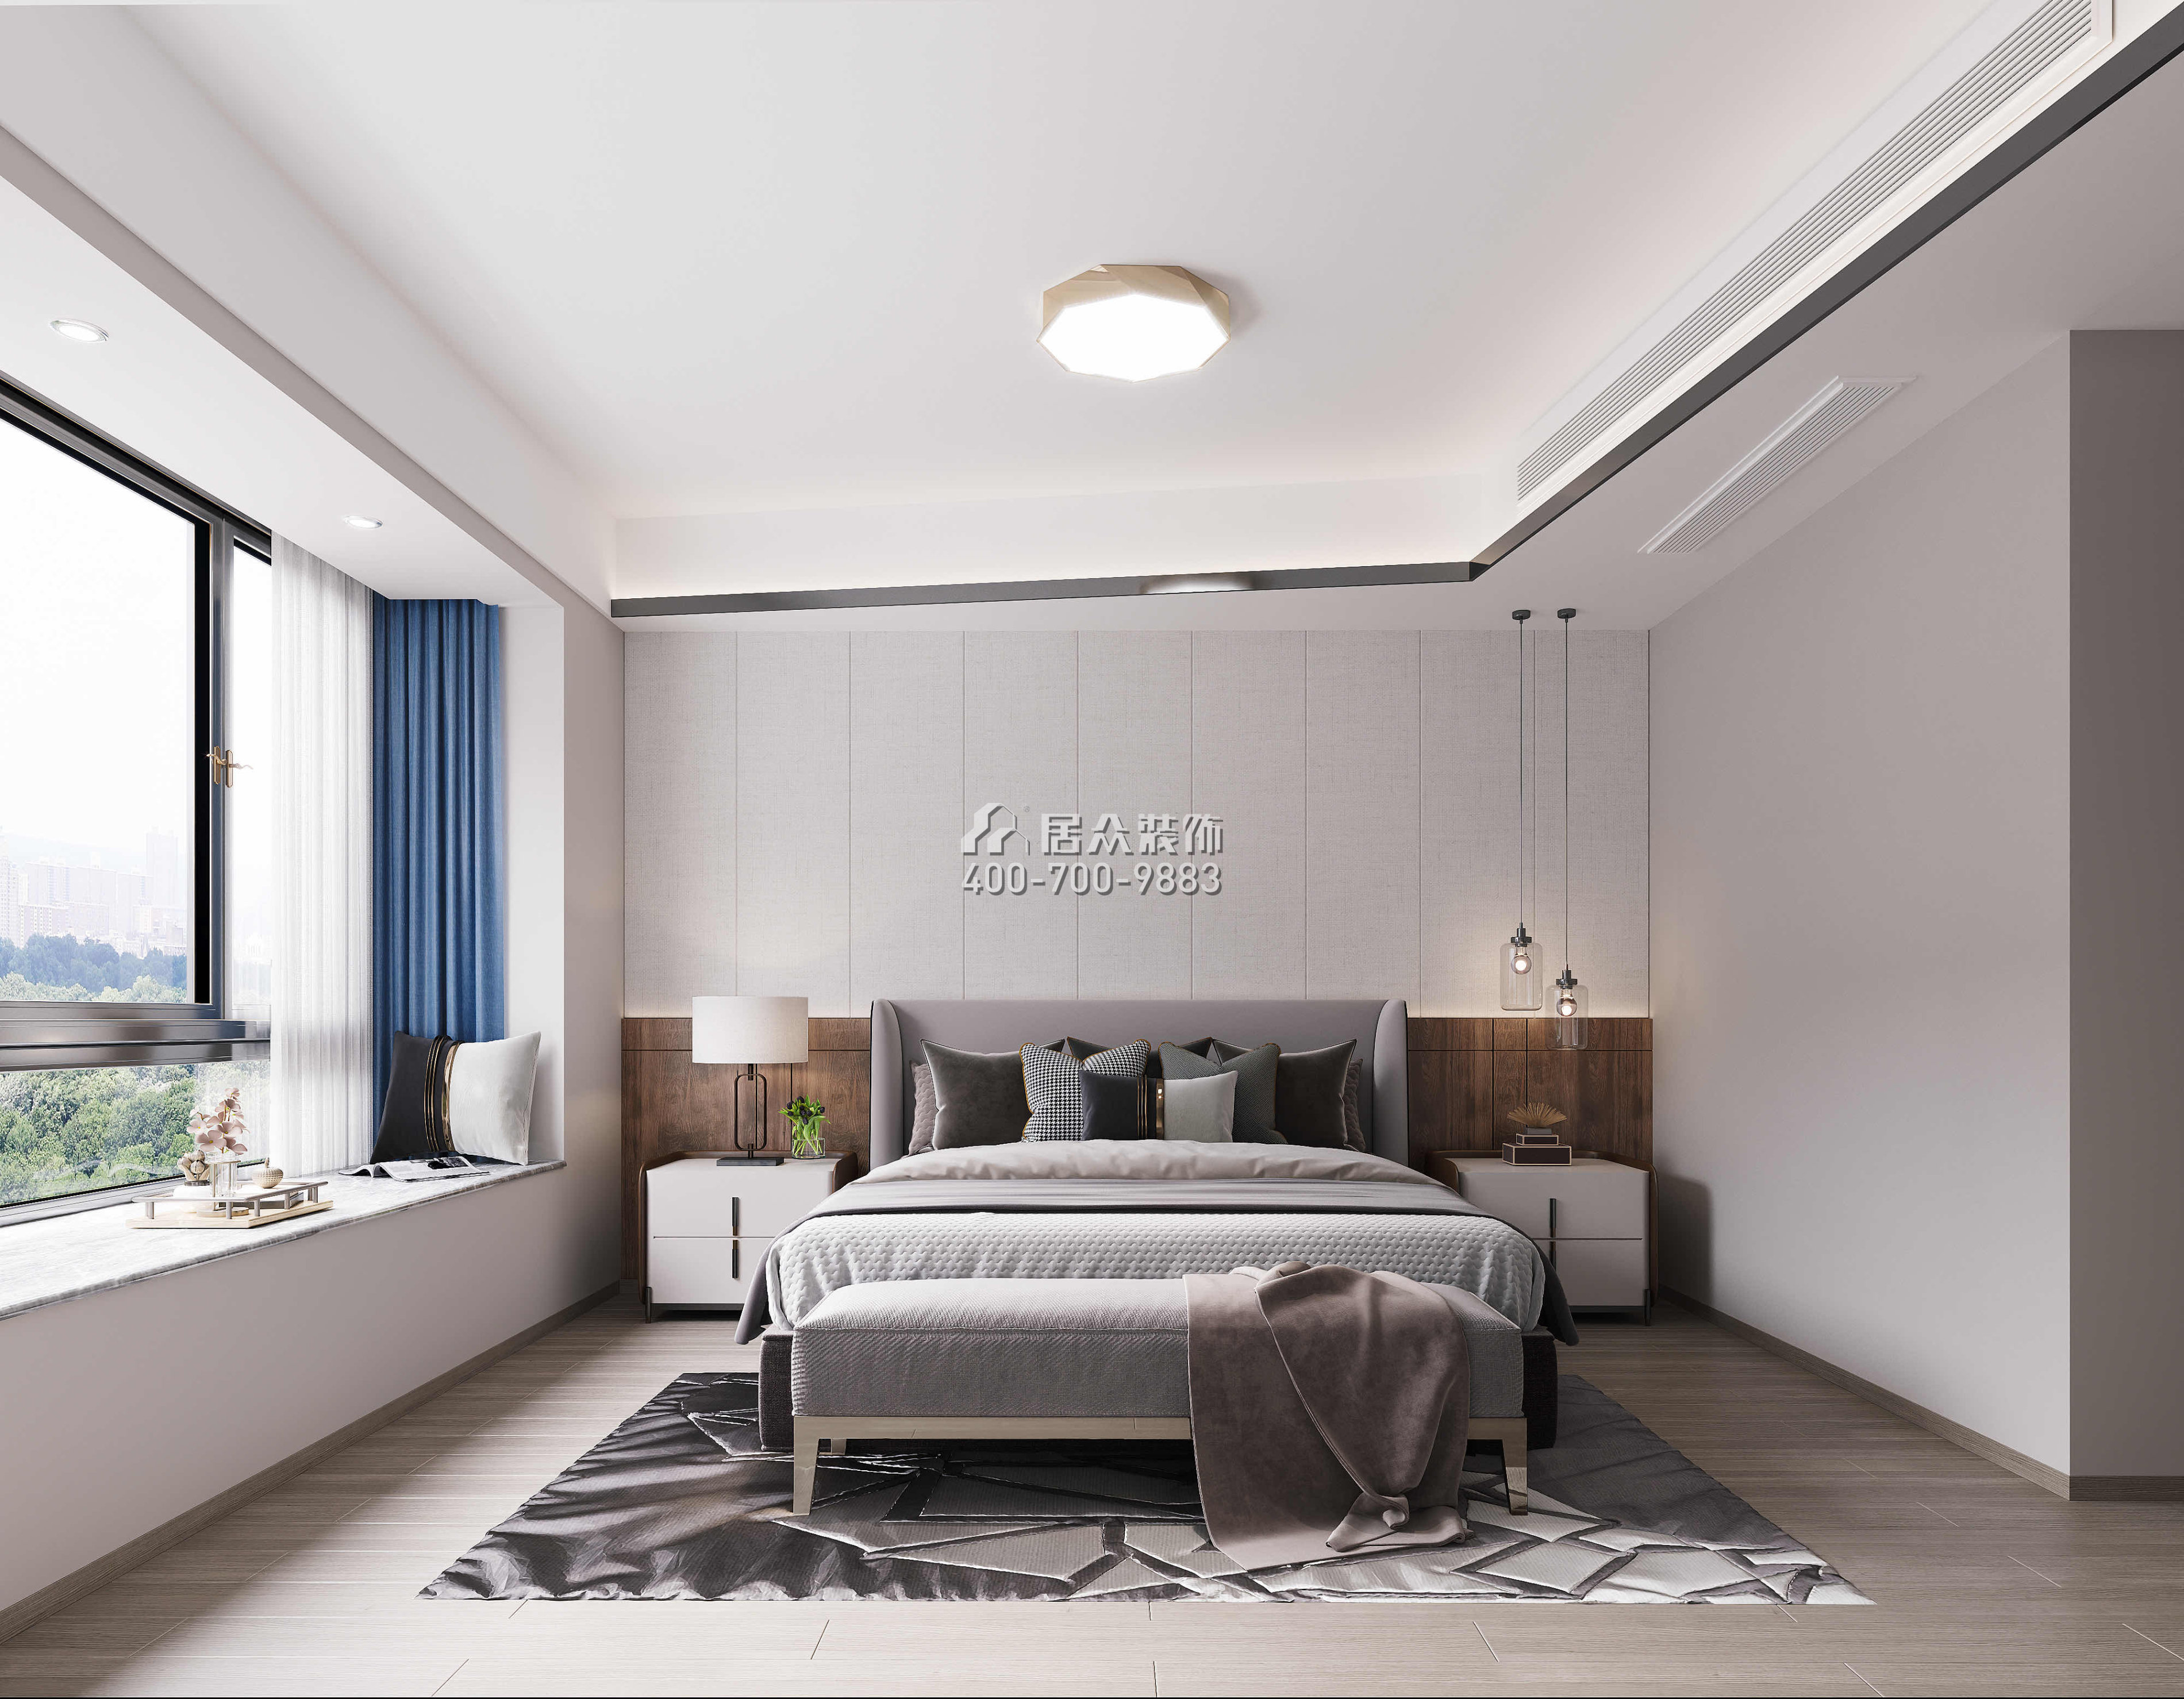 招商海月120平方米現代簡約風格躍式戶型臥室裝修效果圖